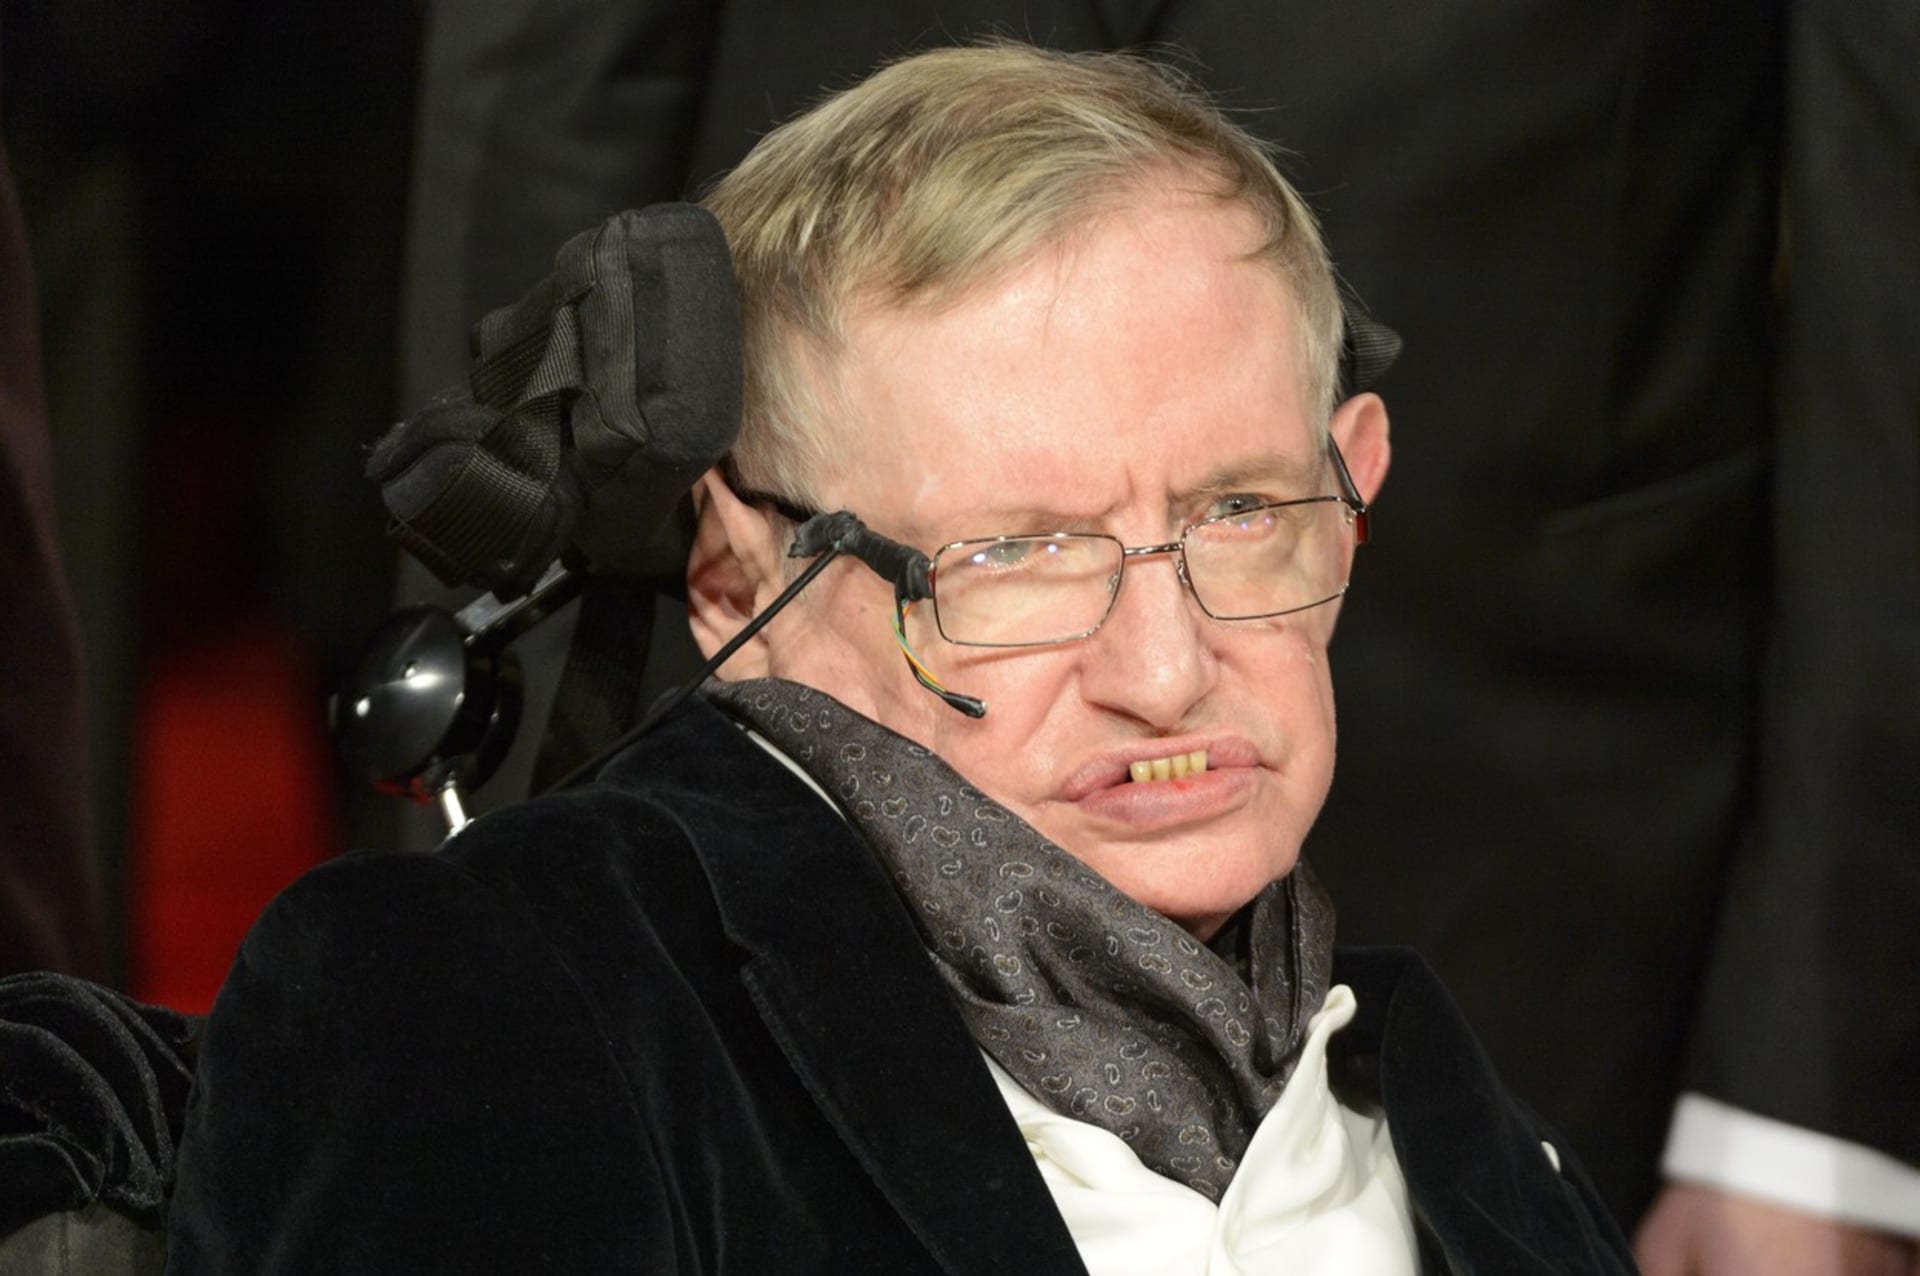 Stephen Hawking před smrtí varoval před umělou inteligencí